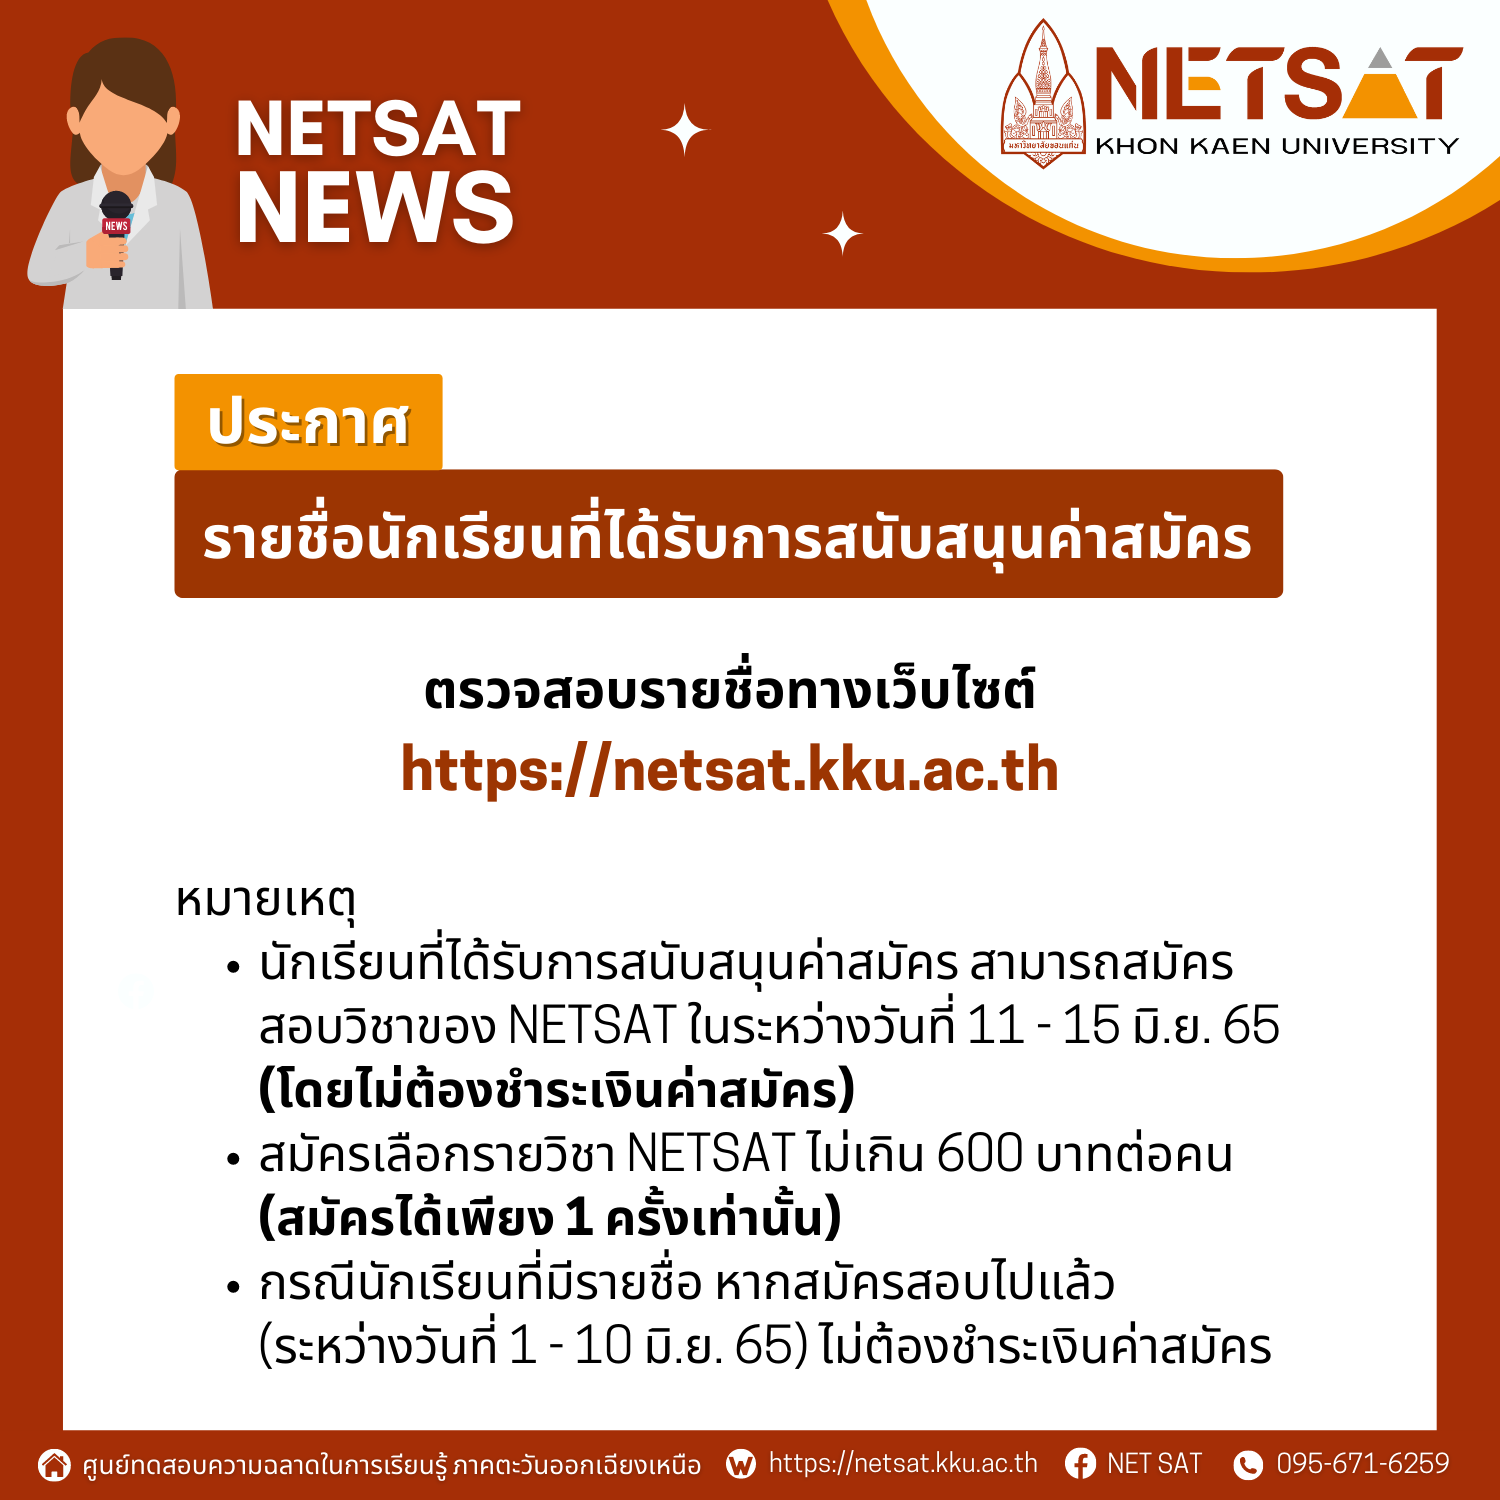 ประกาศรายชื่อนักเรียนที่ได้รับการสนับสนุนค่าสมัคร Netsat ครั้งที่ 2/2565